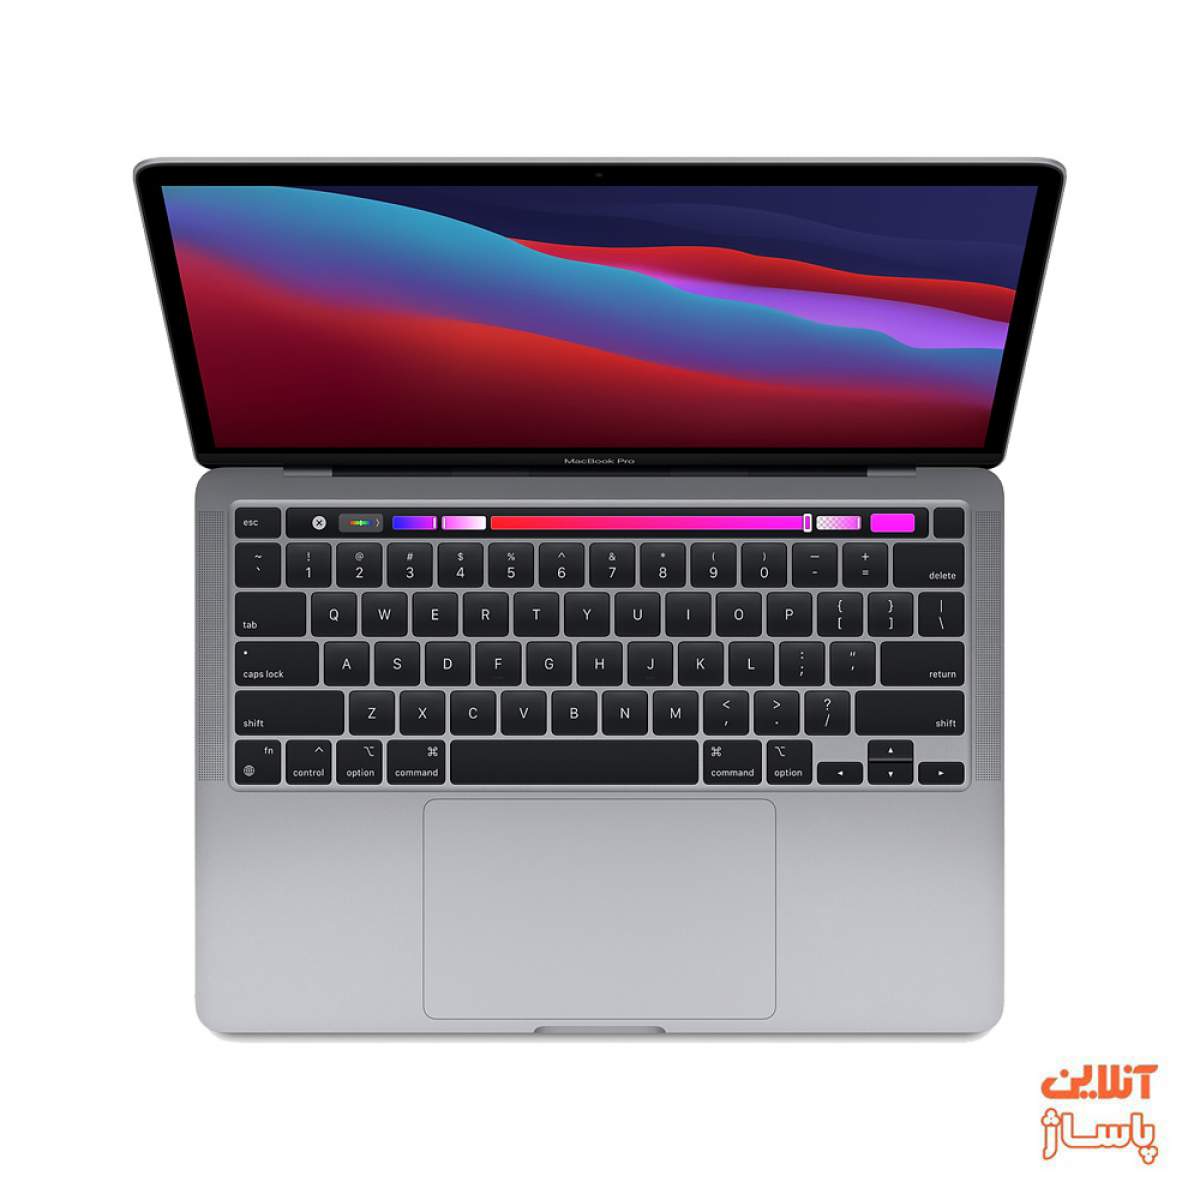 قیمت لپ تاپ 16 اینچی اپل مدل MacBook Pro MVVL2 2019 همراه با تاچ بار -خرید لپتاپ 16 اینچی اپل مدل MacBook Pro MVVL2 2019 همراه با تاچ بار -فروش لپ